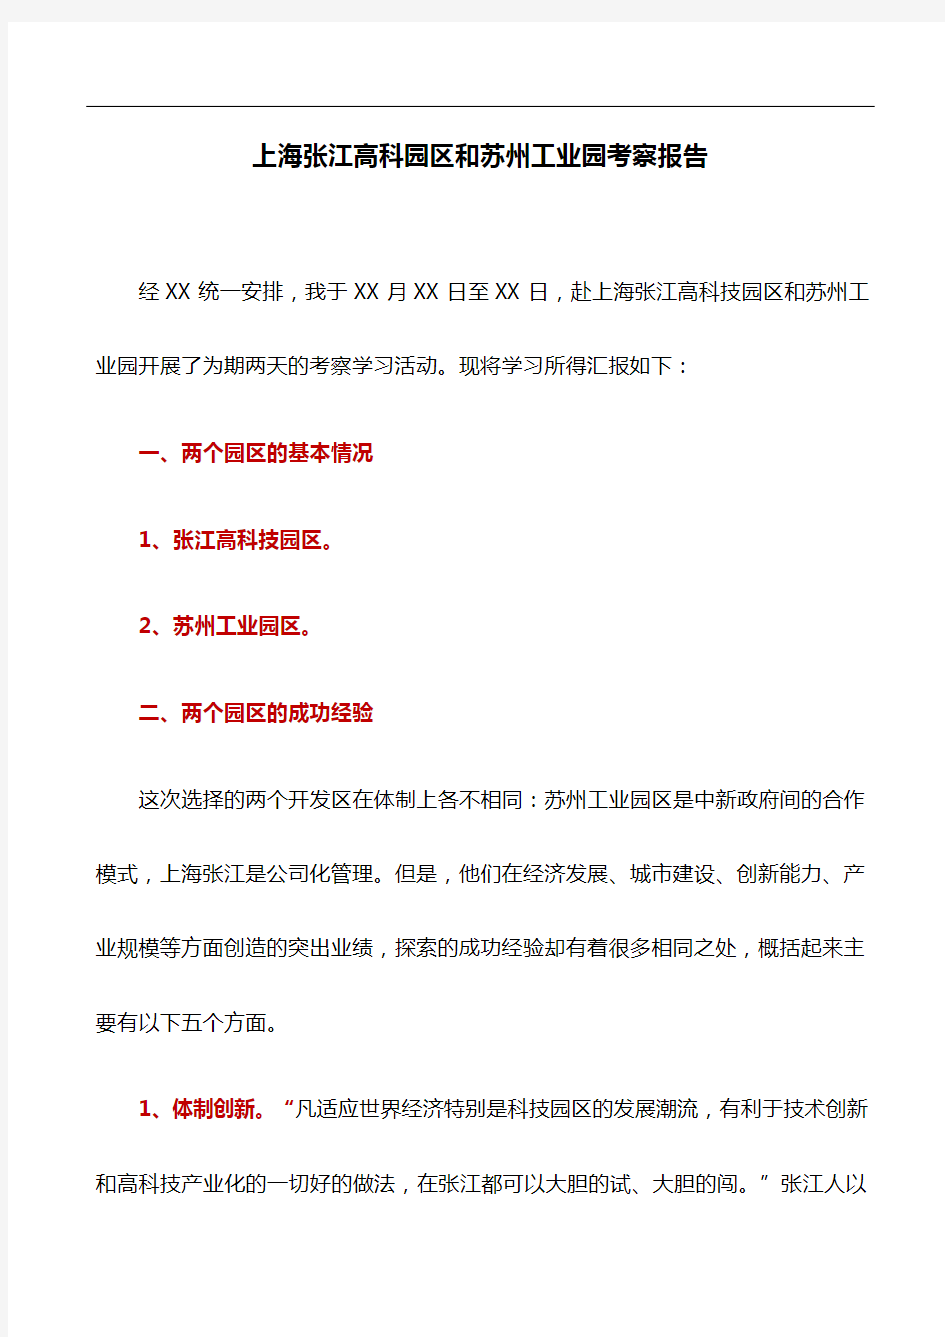 考察报告：上海张江高科园区和苏州工业园考察报告